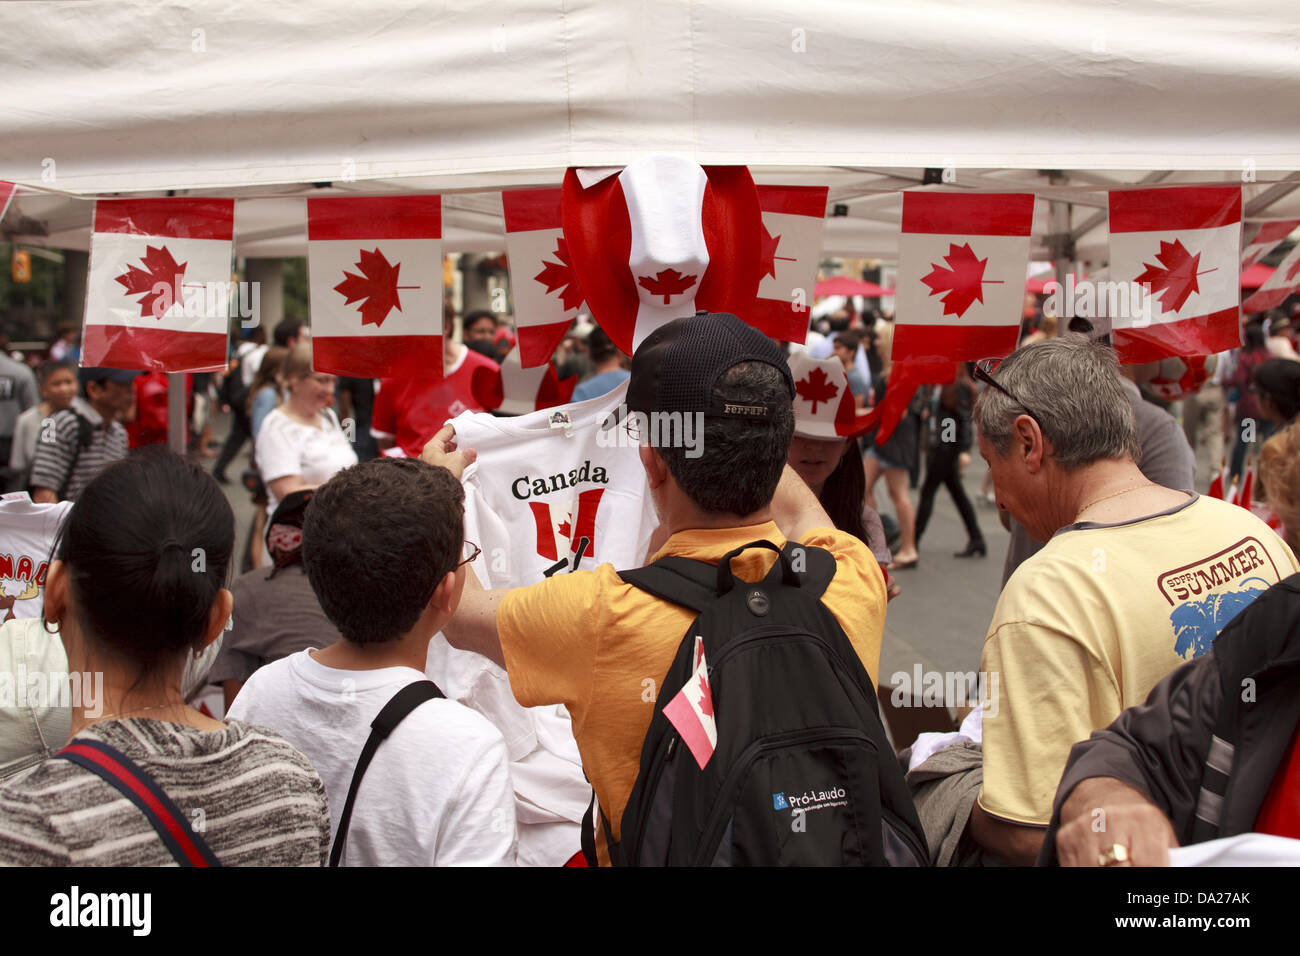 Toronto, Kanada. 1. Juli 2013. Menschen kaufen Bekleidung mit kanadischen Symbolen zu feiern Canada Day am Yonge-Dundas square 1. Juli 2013 in Toronto, Kanada. Bildnachweis: Igor Kisseleff/Alamy Live-Nachrichten Stockfoto